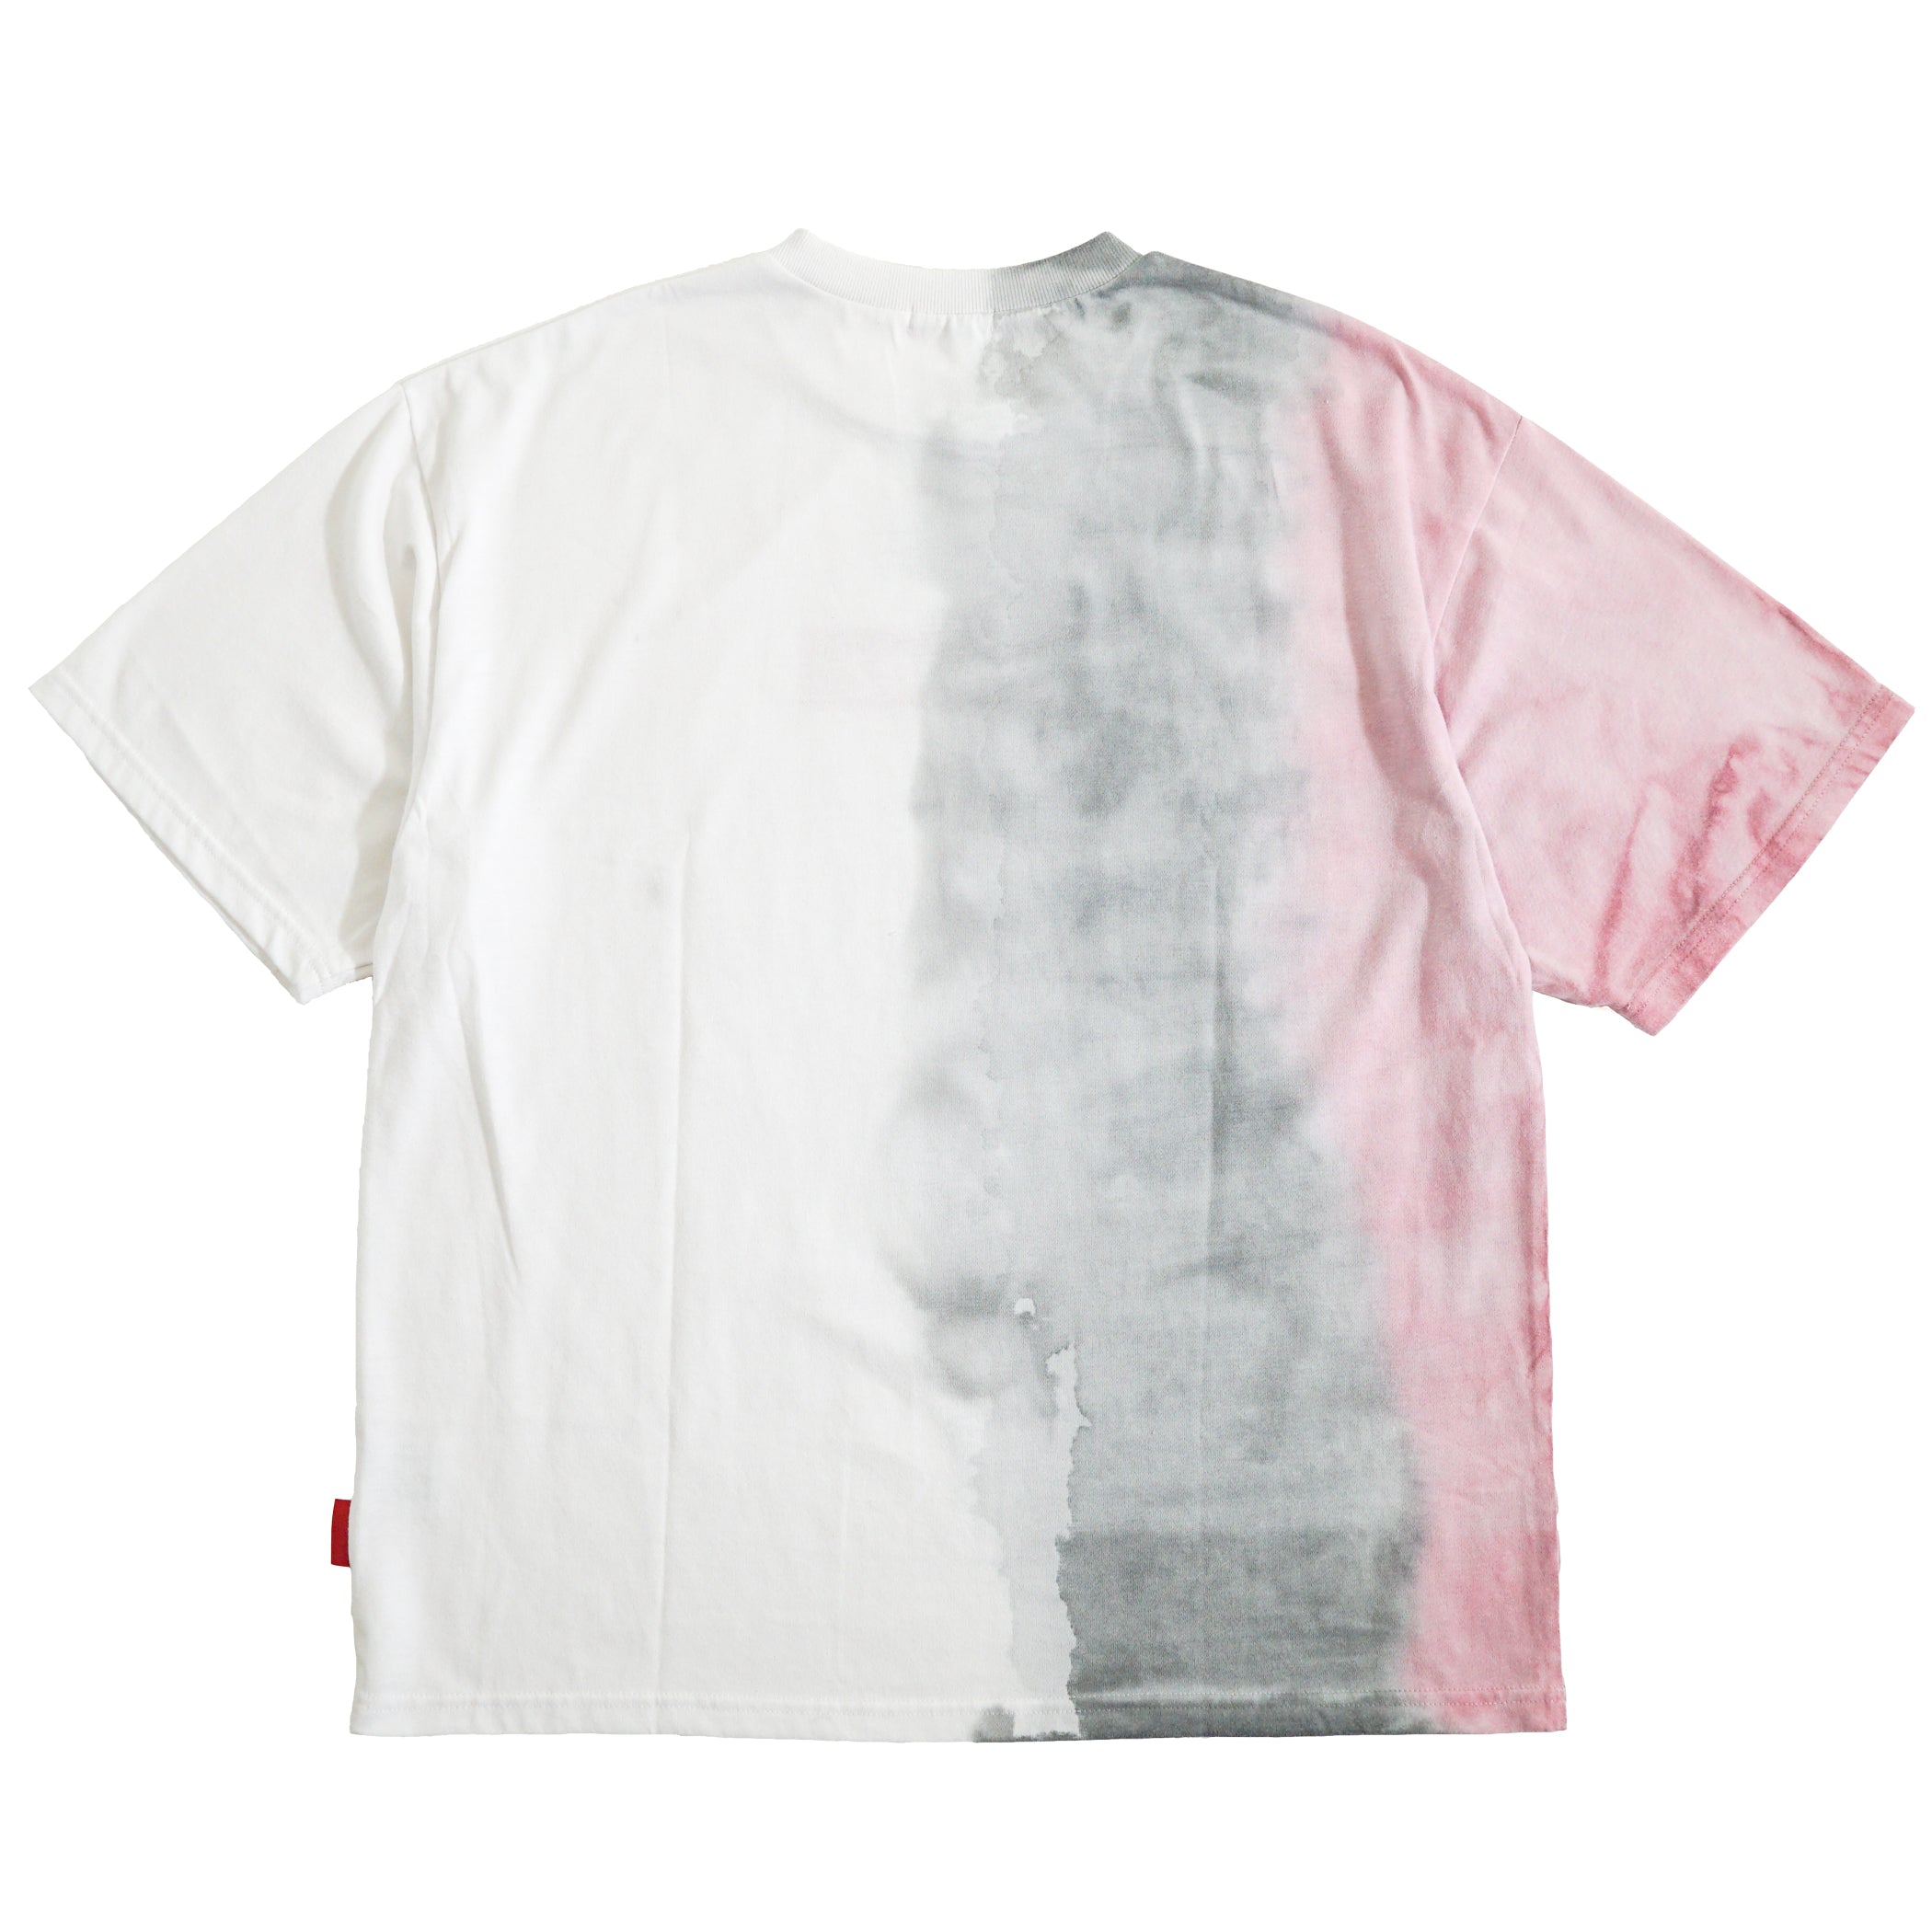 ASIANZ LIMITED ボックスロゴ カスタムTシャツ  Lサイズ  (ホワイト 1)